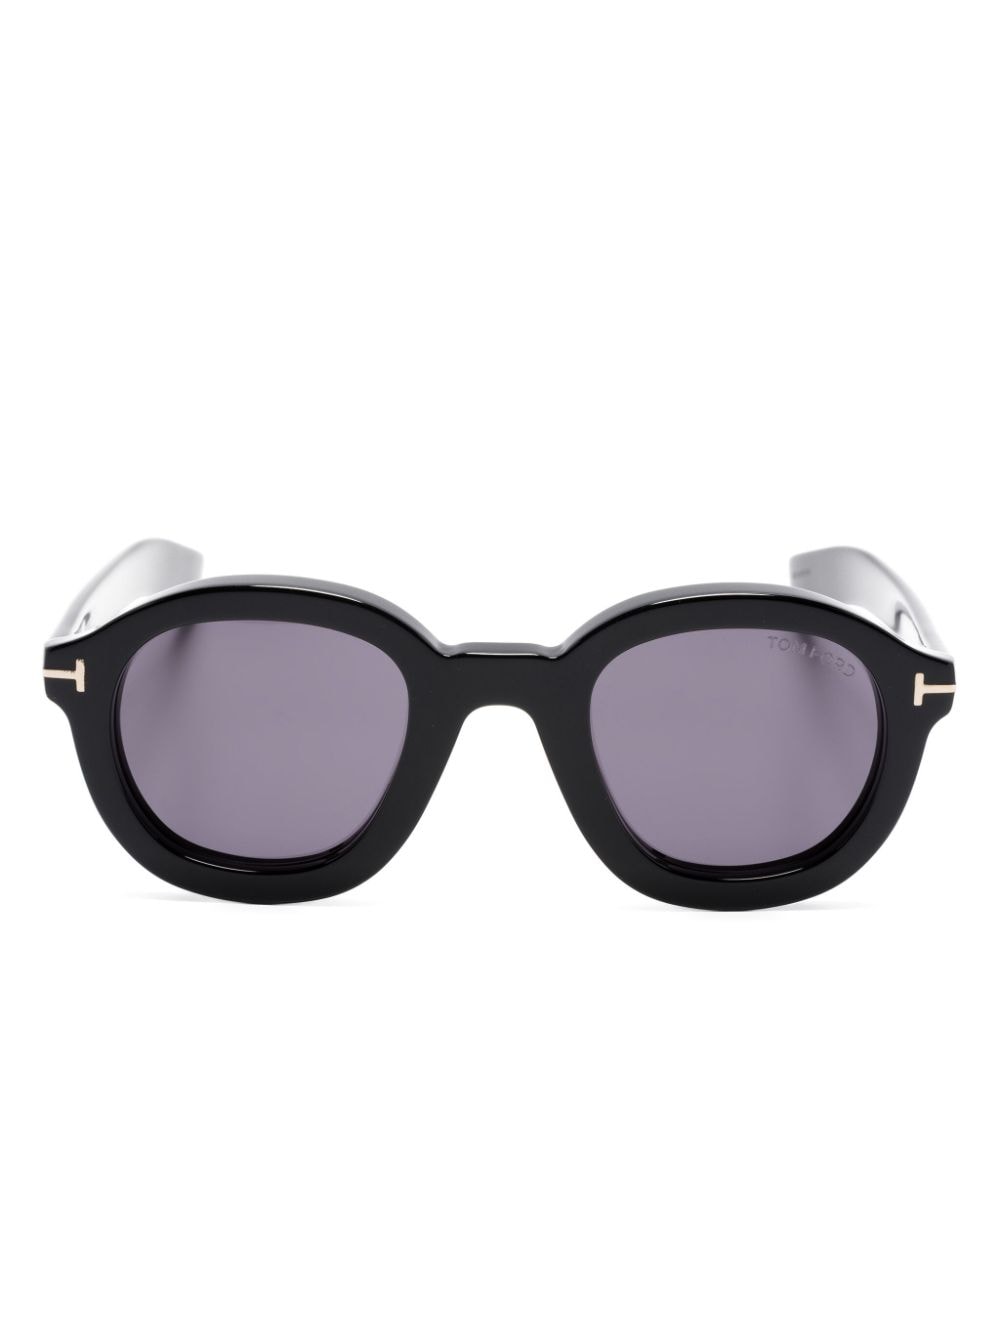 TOM FORD Eyewear Raffa round-frame sunglasses - Black von TOM FORD Eyewear